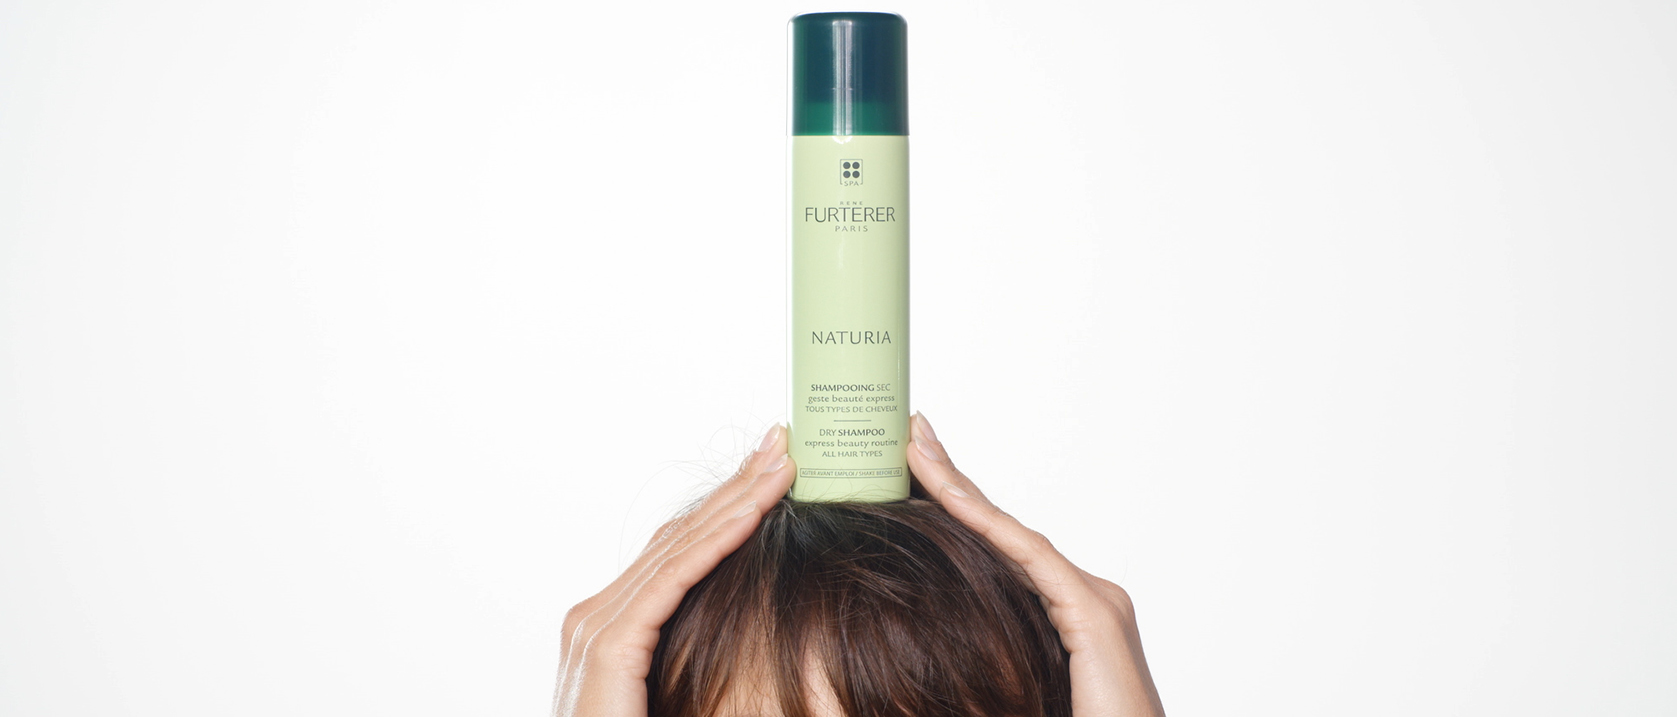 NATURIA Dry shampoo application video  | René Furterer